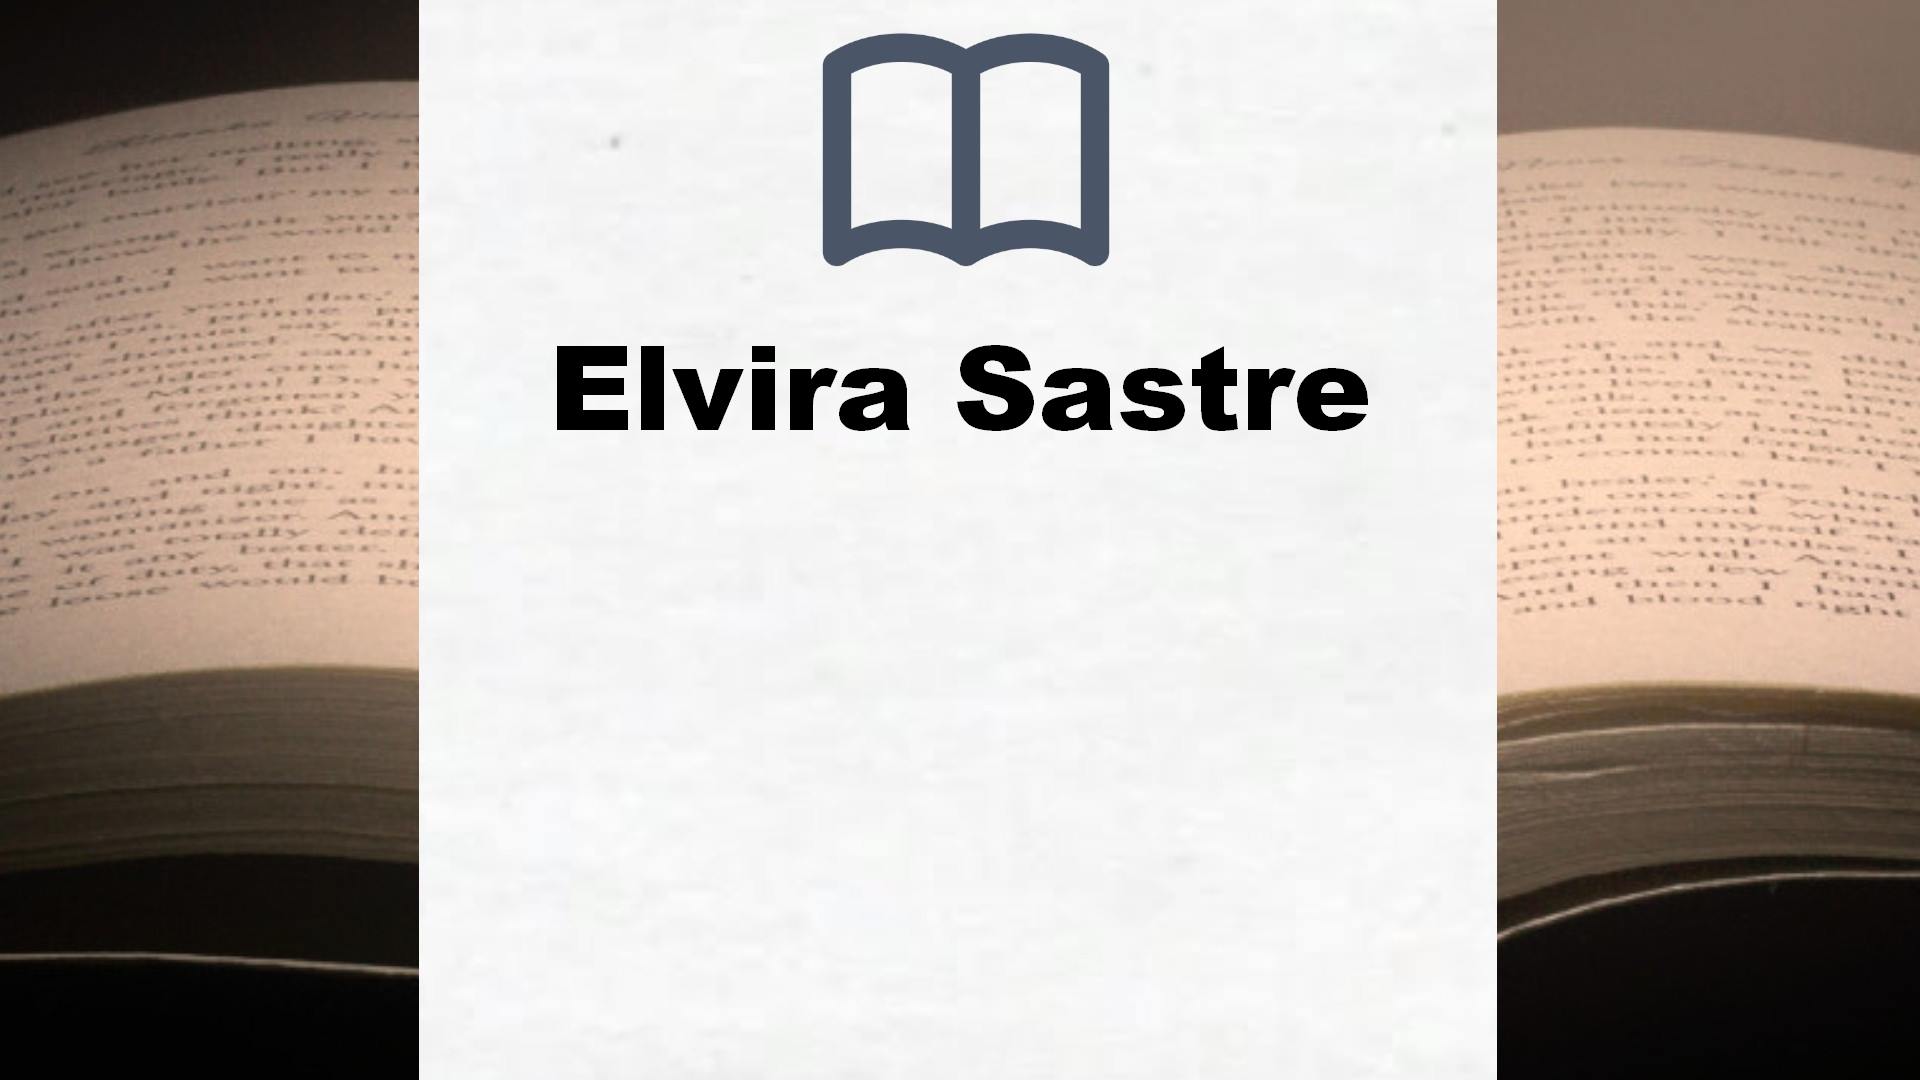 Libros Elvira Sastre